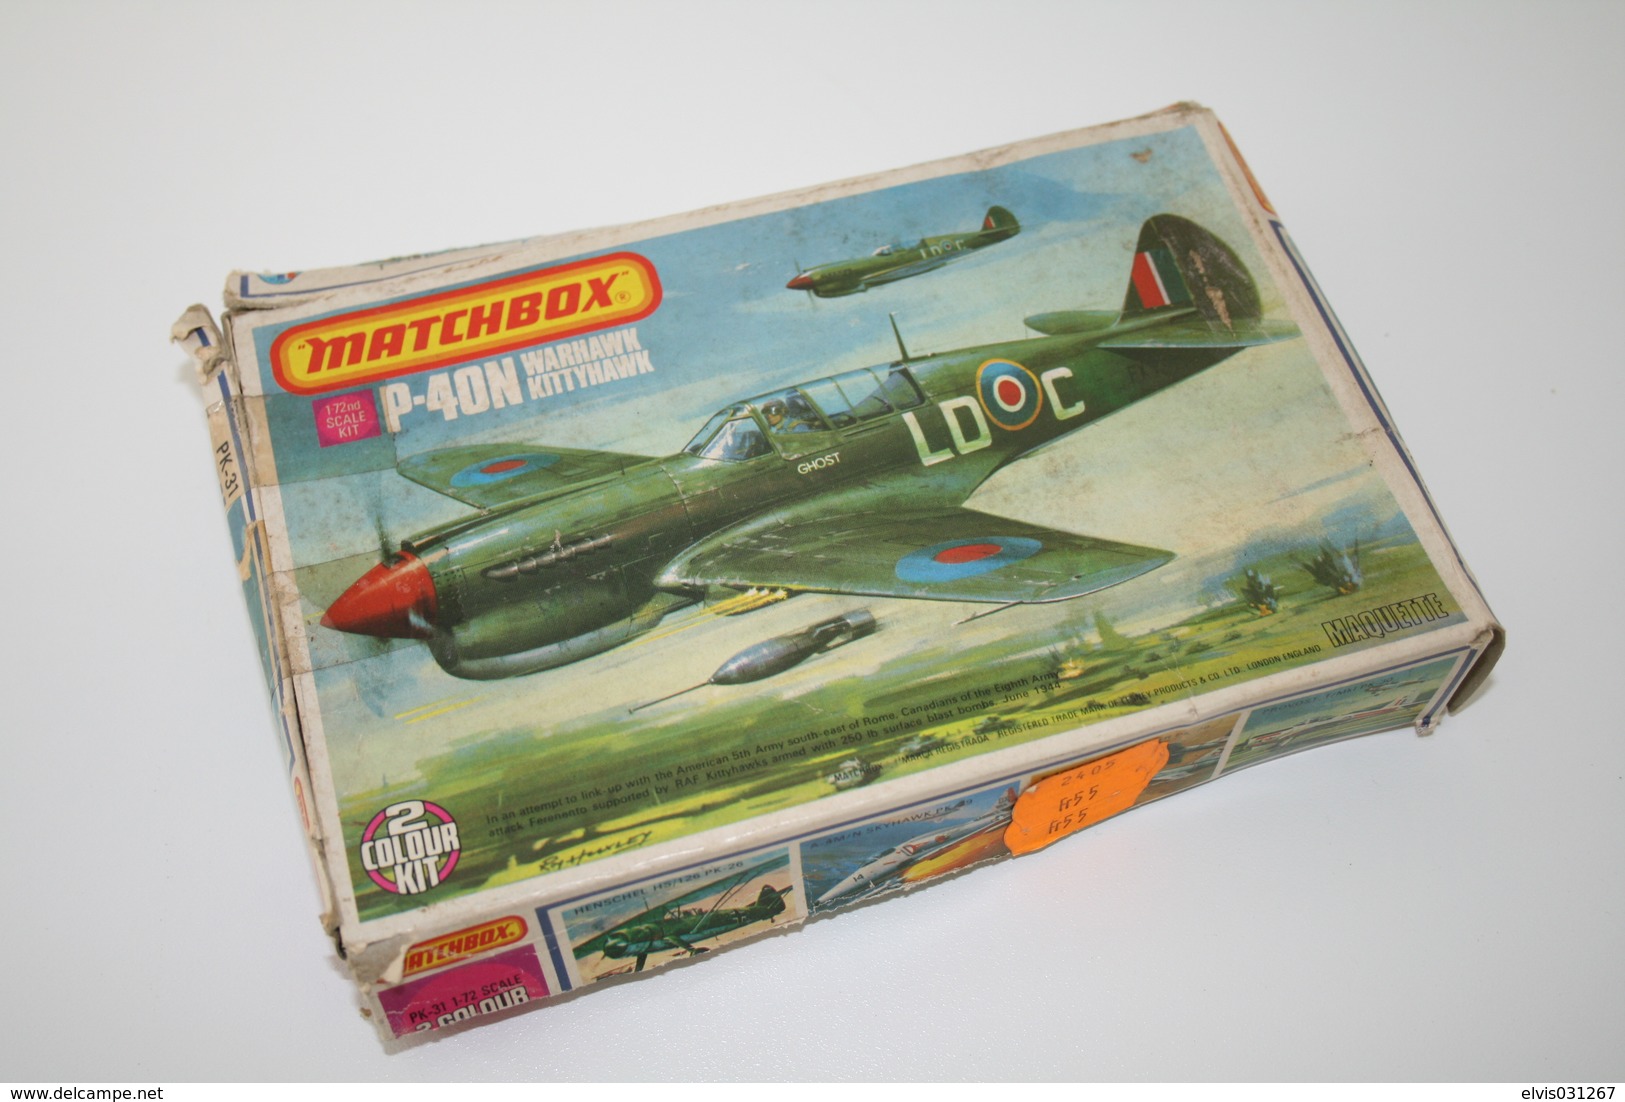 Vintage MODEL KIT : Matchbox P-40N Warhawk Kittyhawk, Scale 1/72, Vintage, + Original Box - Flugzeuge & Hubschrauber